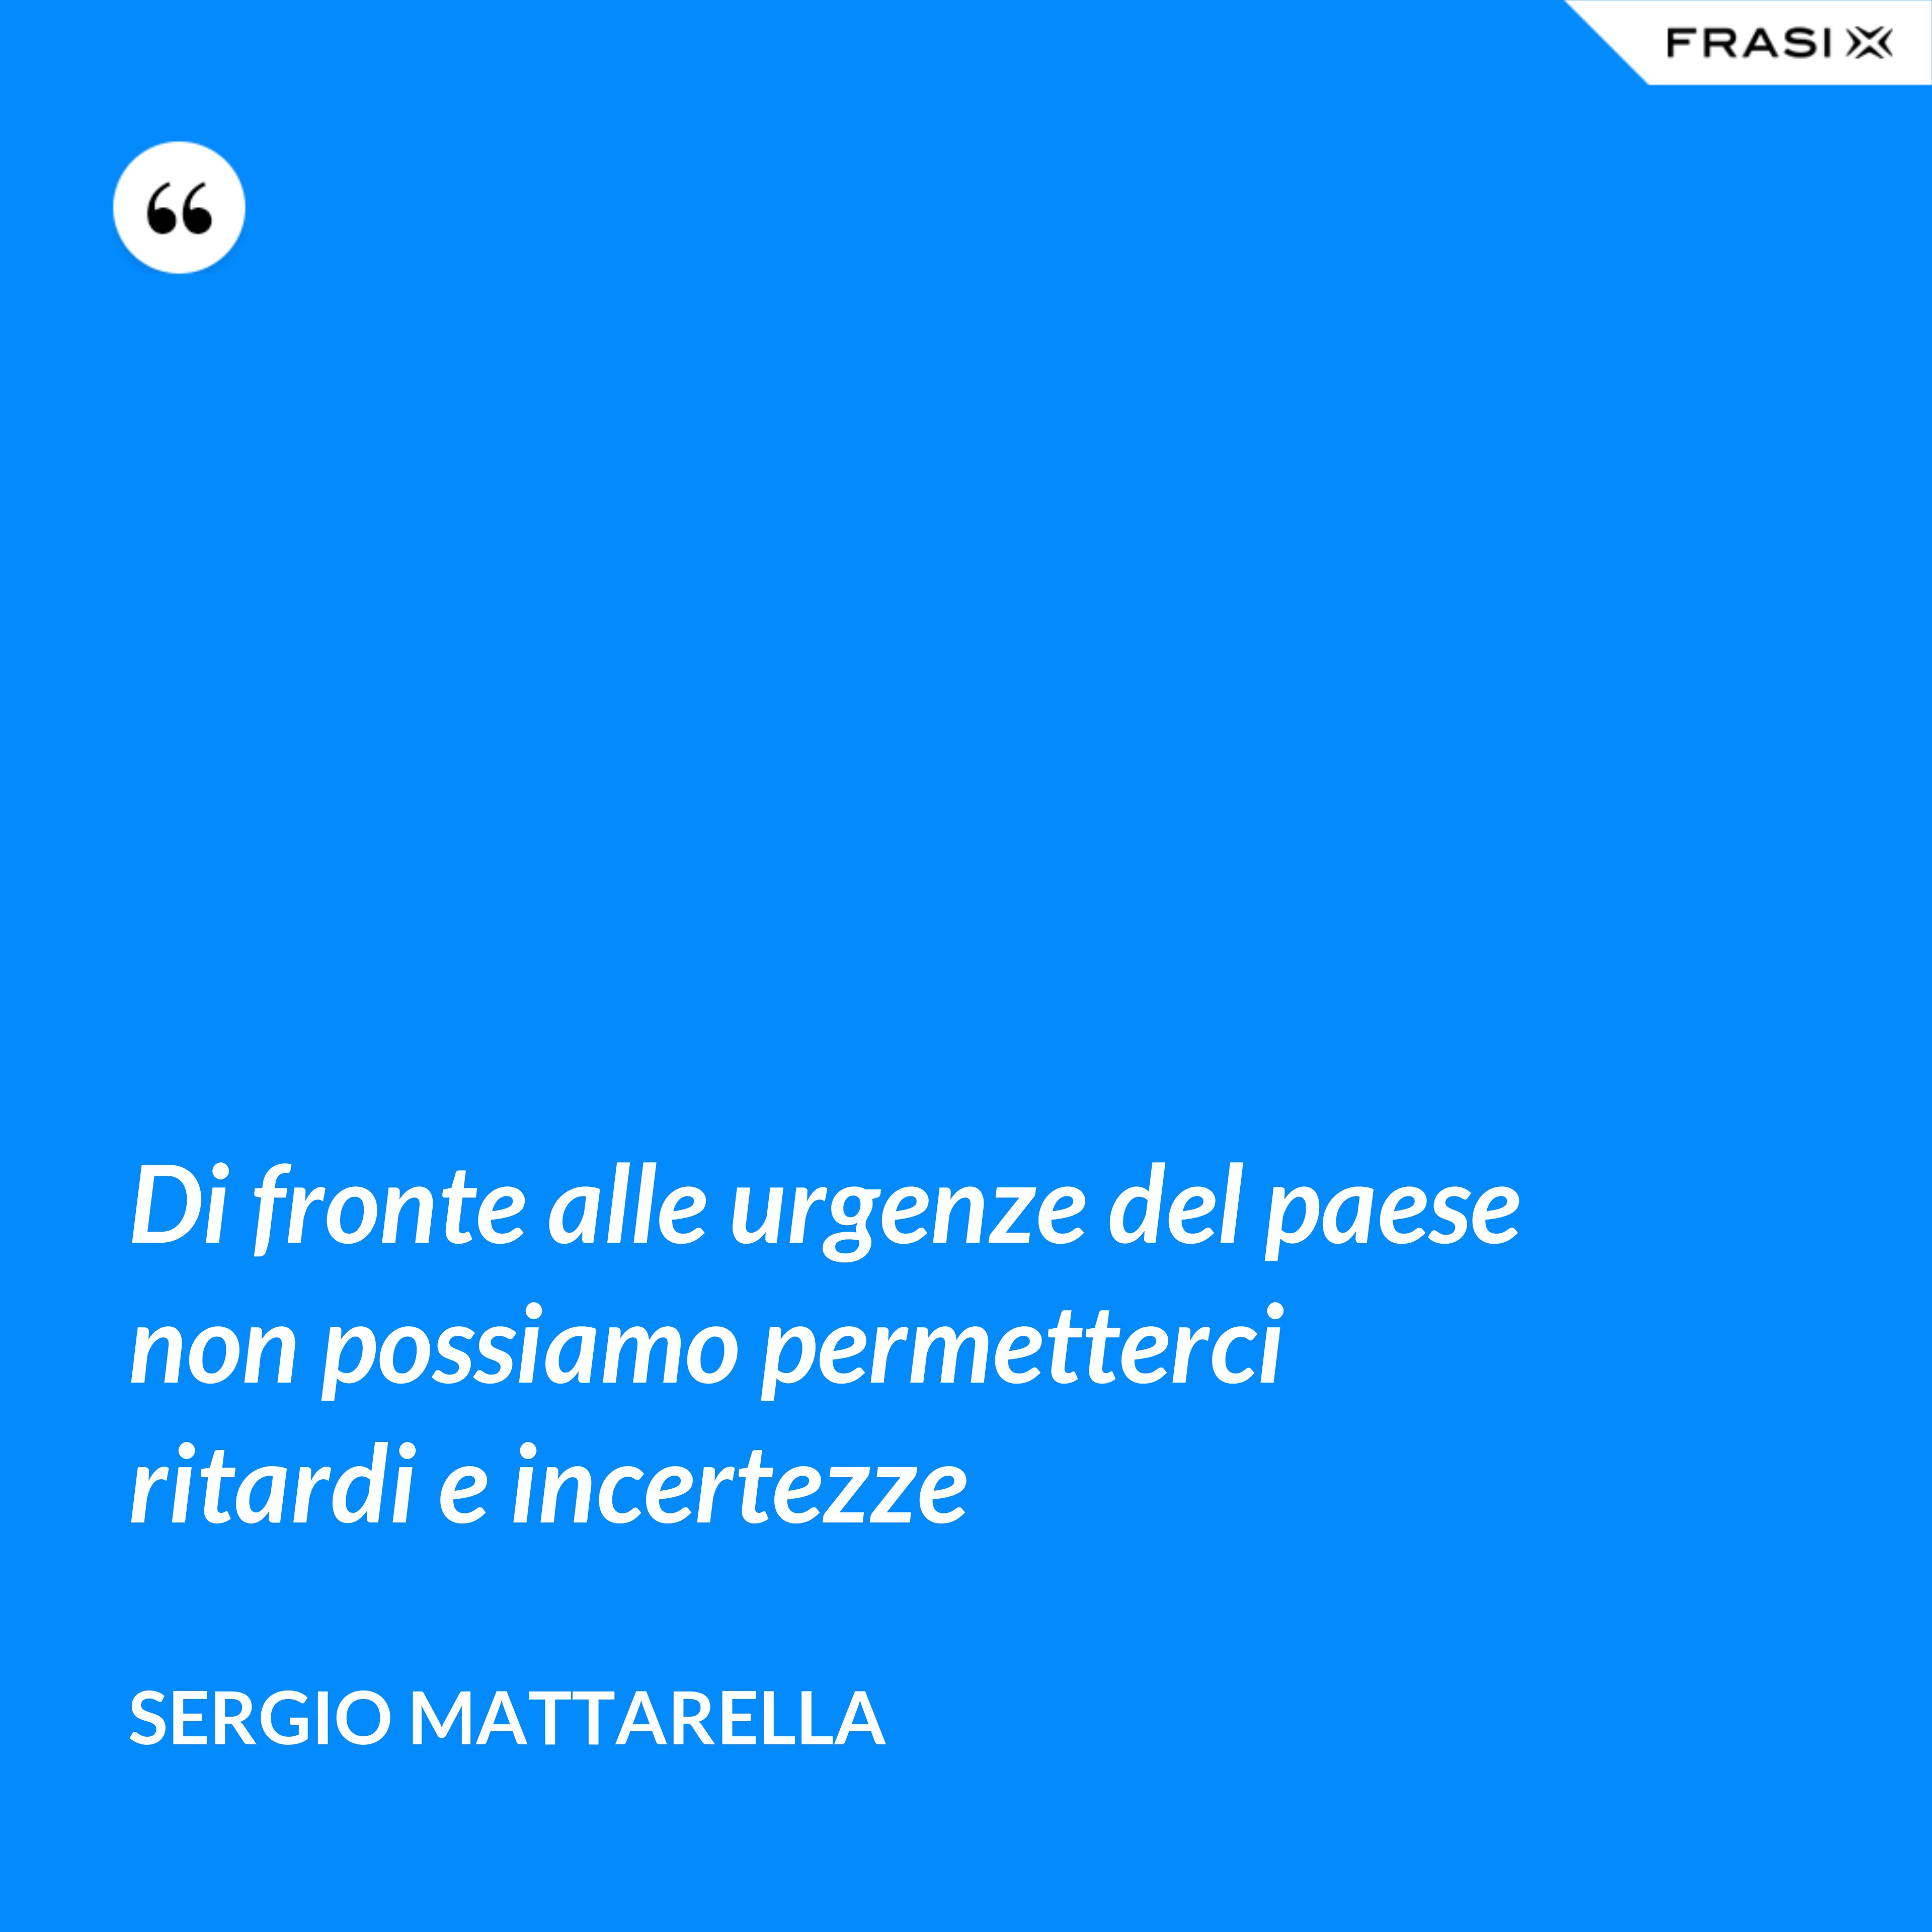 Di fronte alle urgenze del paese non possiamo permetterci ritardi e incertezze - Sergio Mattarella